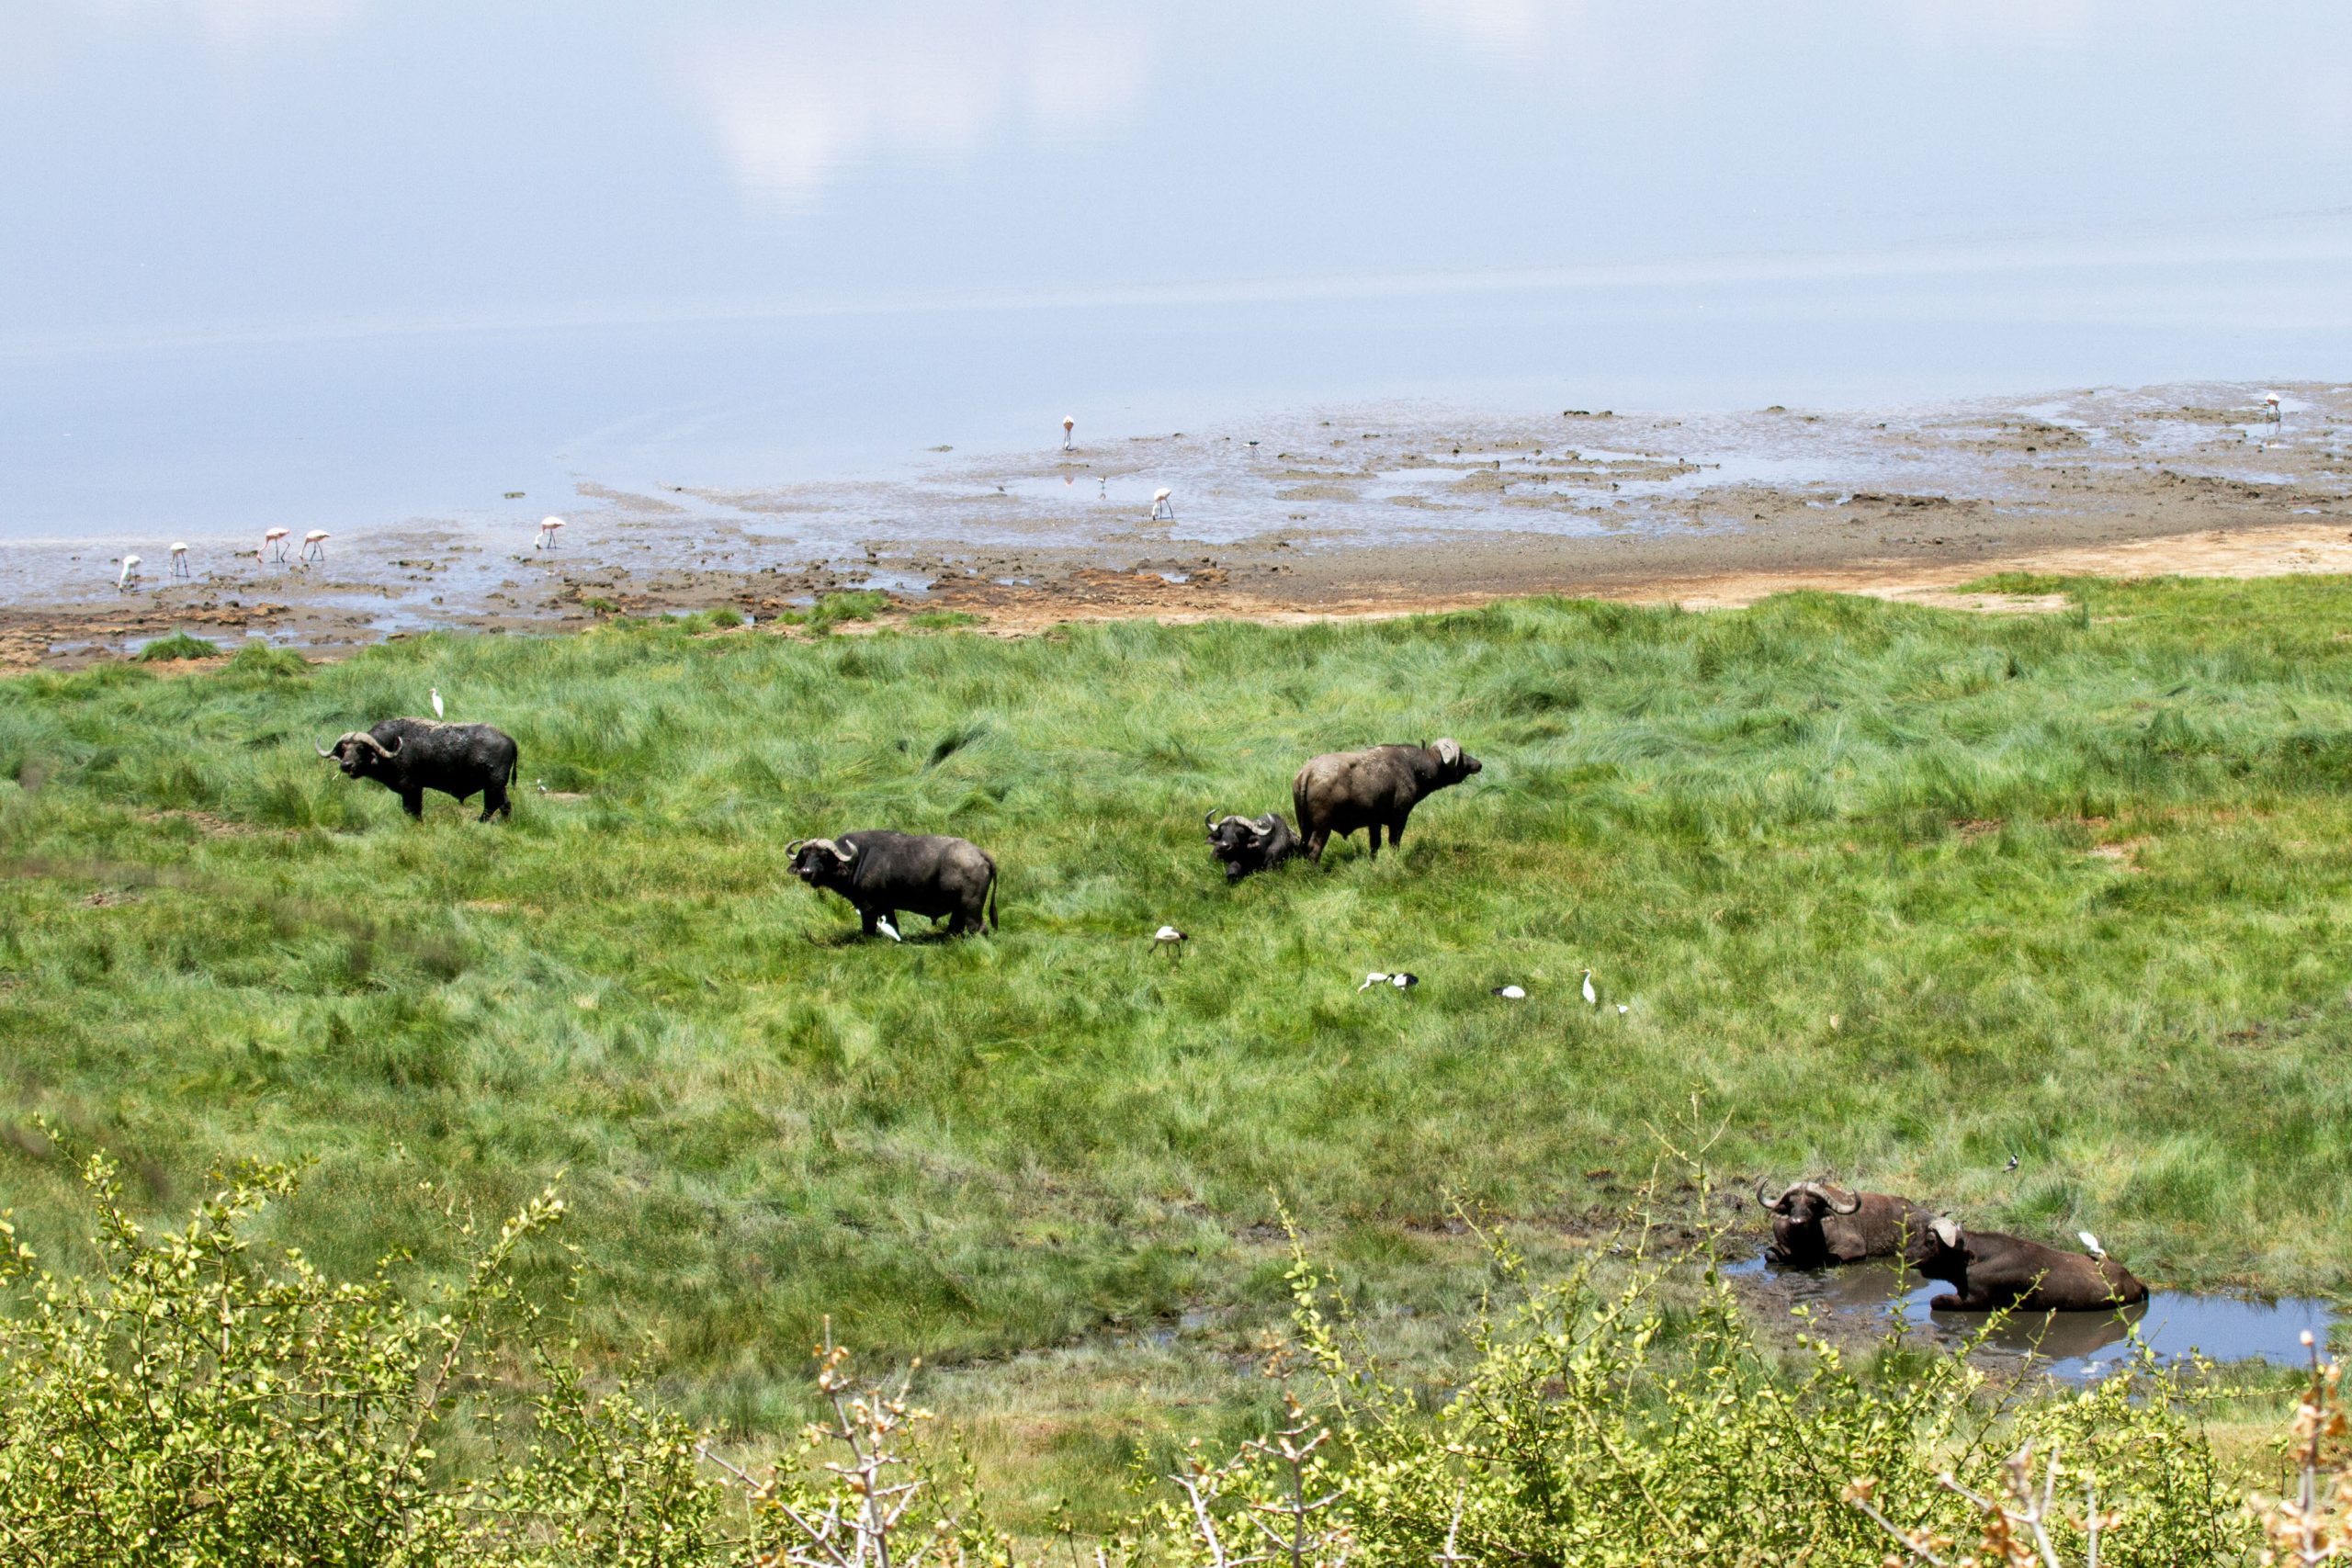 Buffalo spotted near Lake Manyara